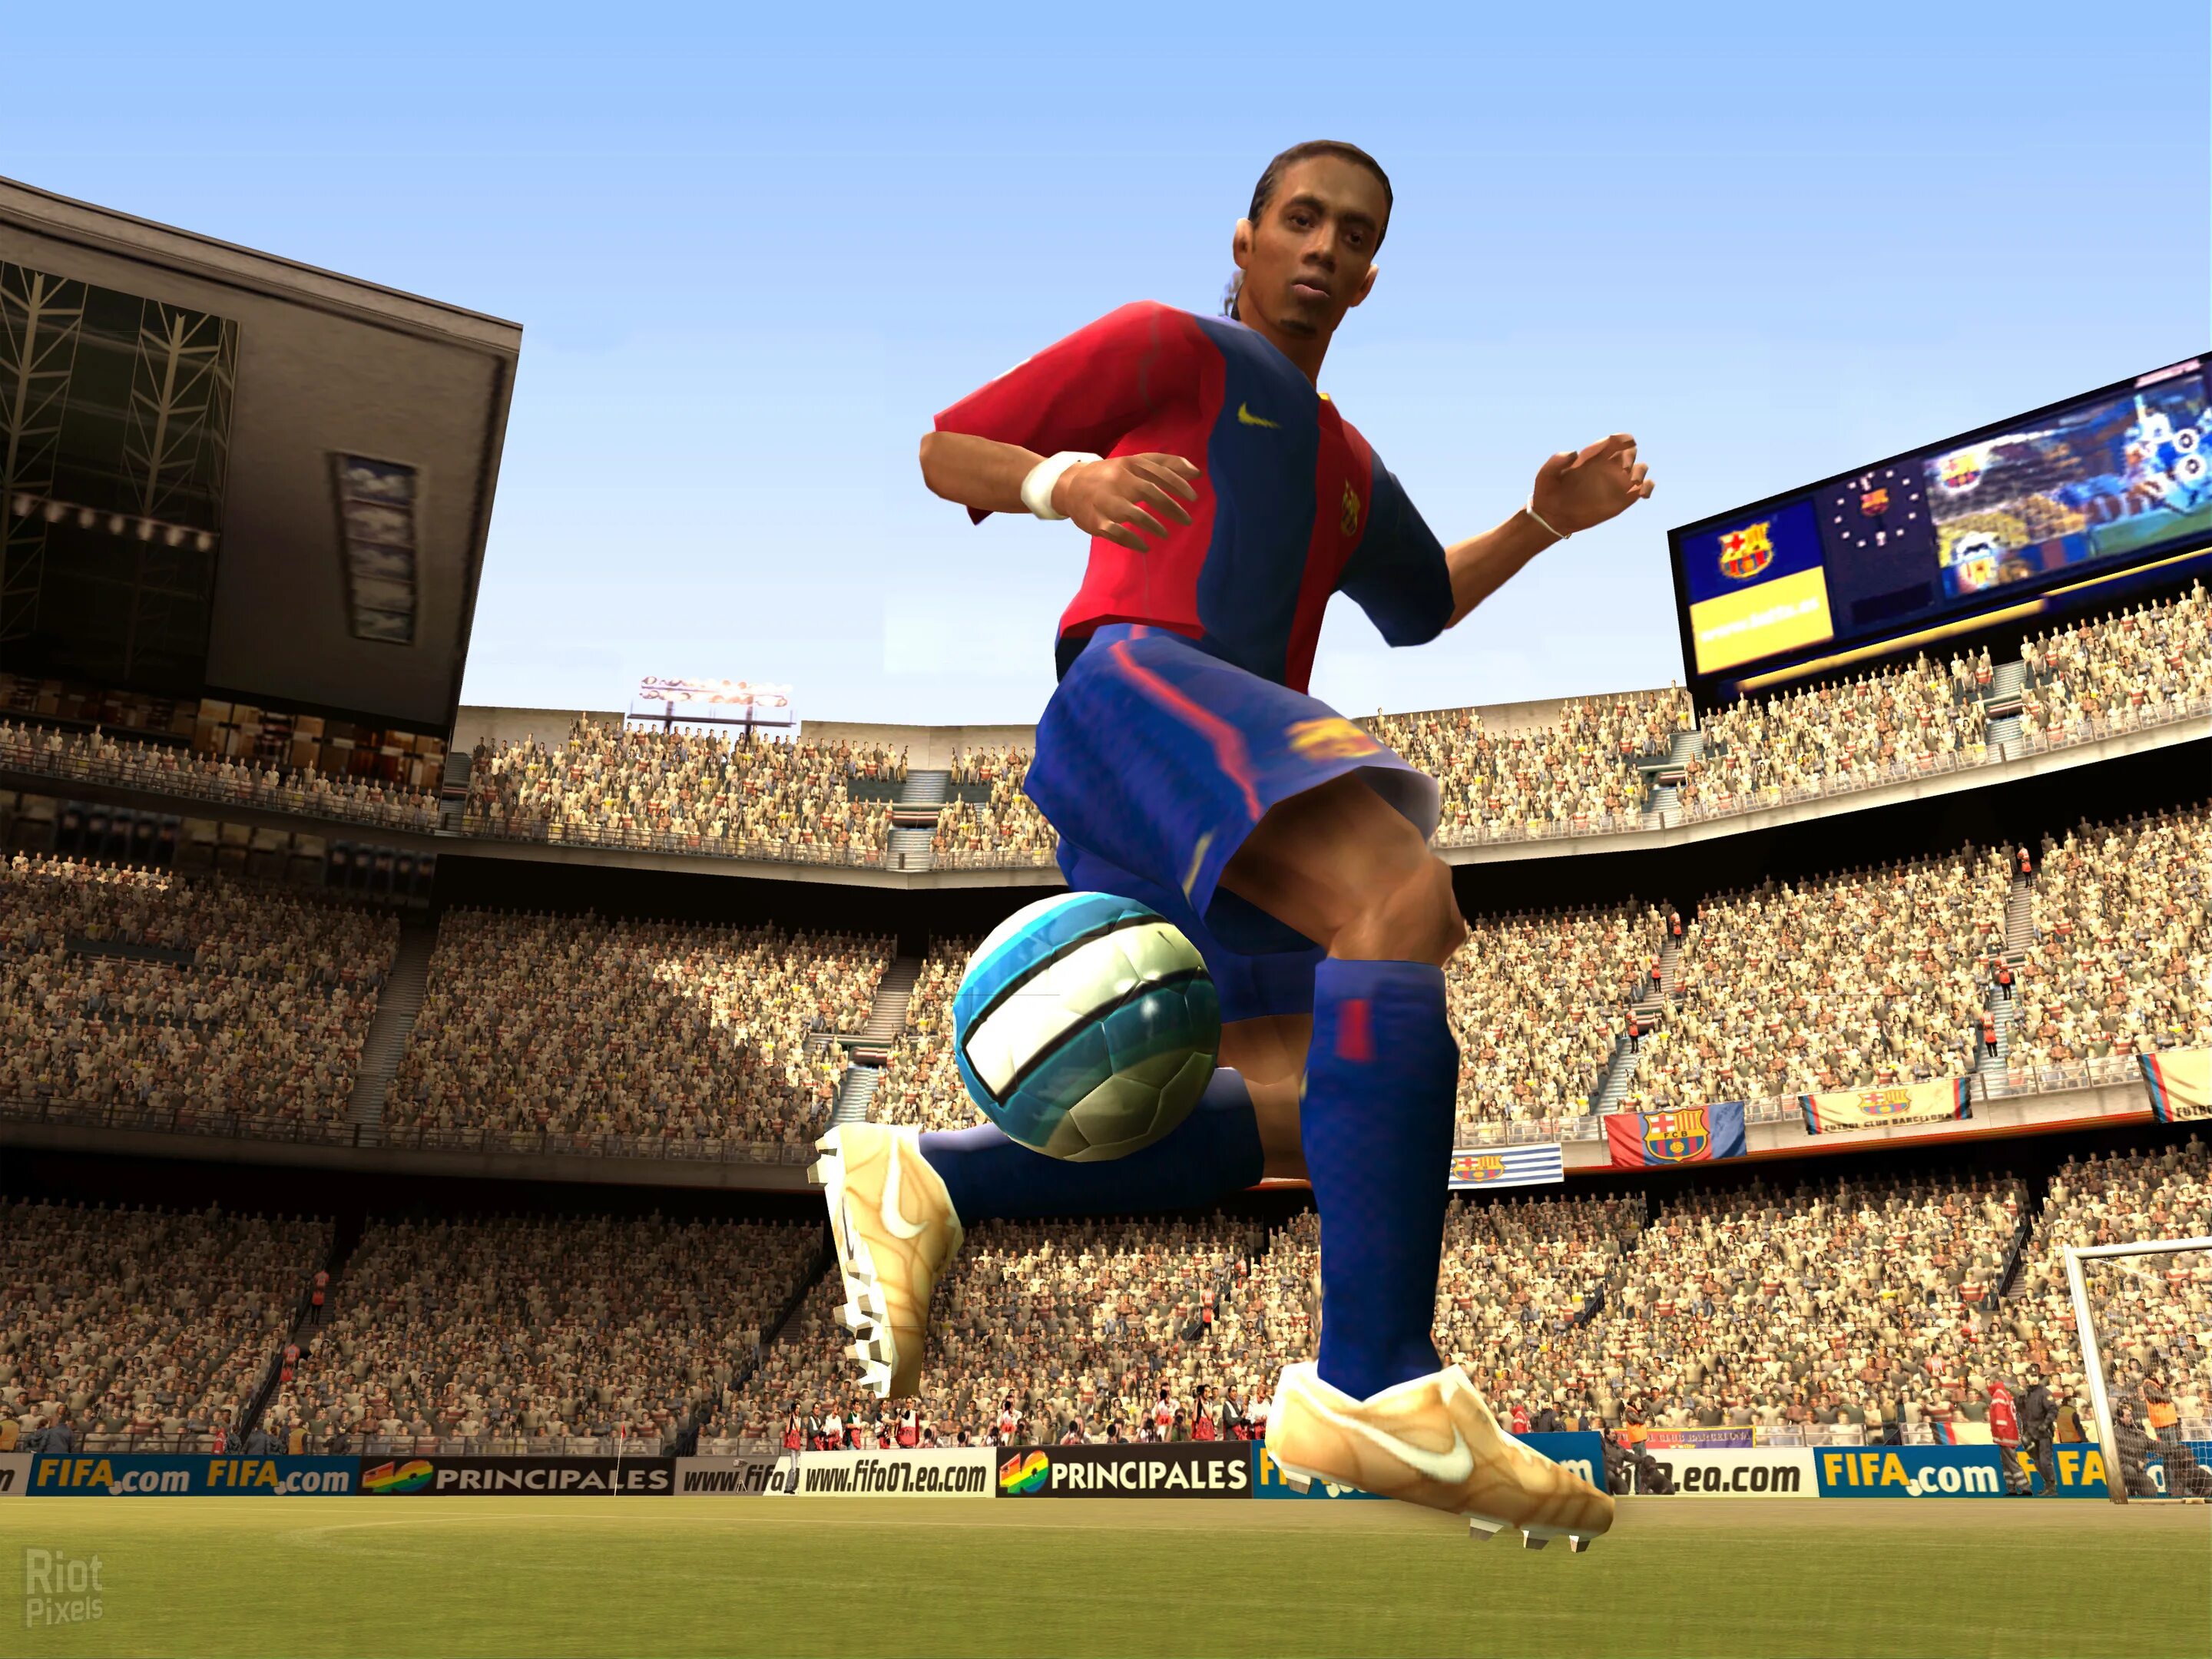 ФИФА Soccer 07. FIFA 07 Soccer. Игра FIFA 2007. FIFA 07 Xbox 360.